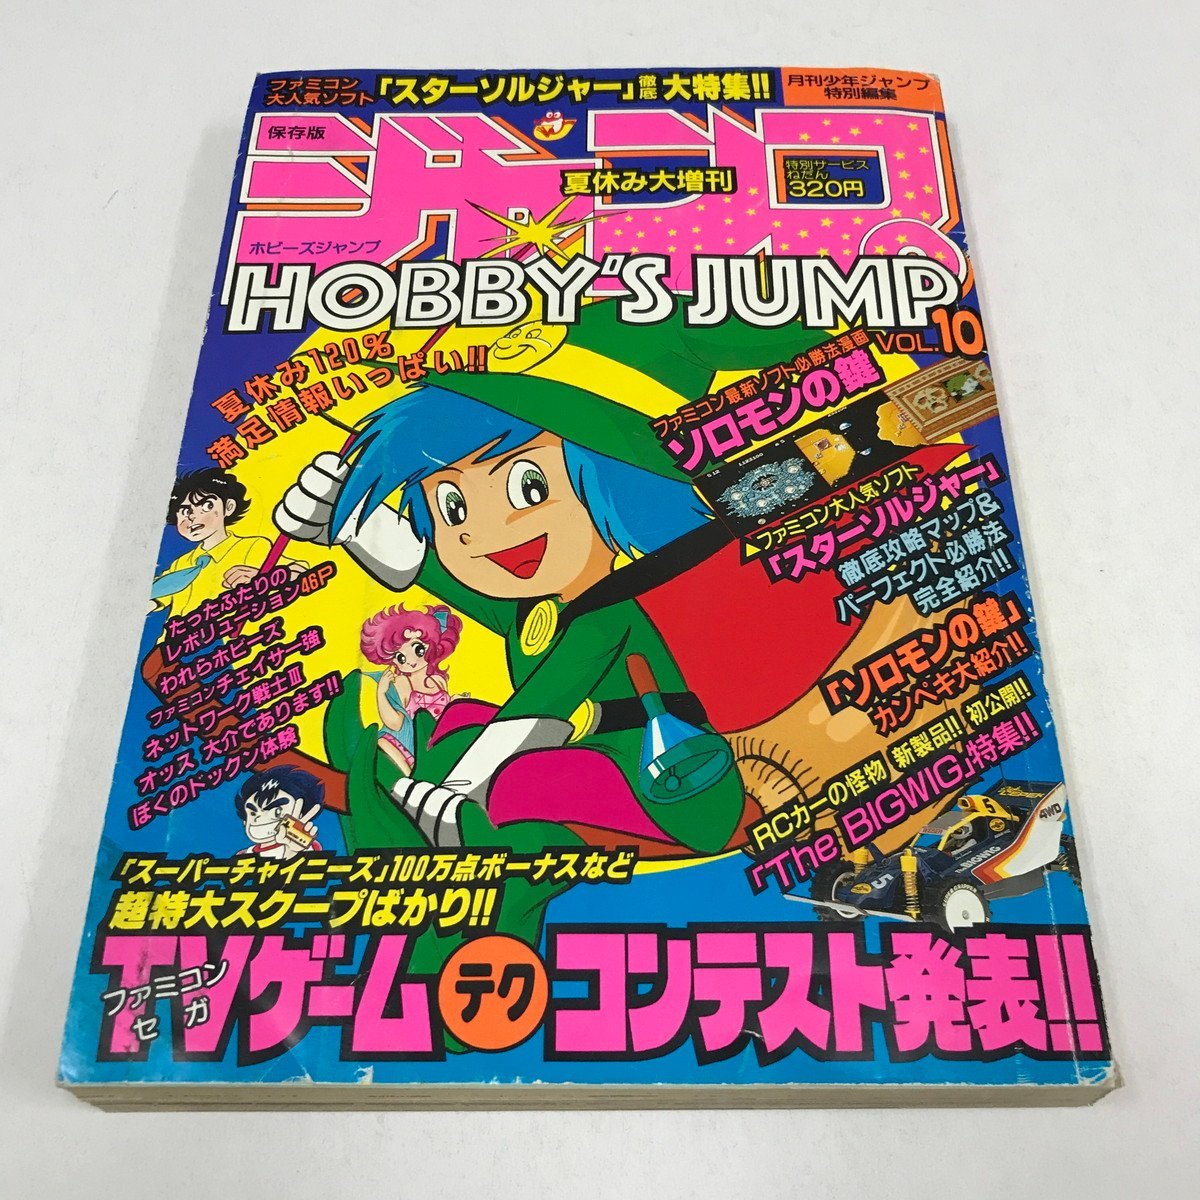 Yahoo!オークション -「ジャンプ増刊」(少年マンガ誌) (男性コミック誌 